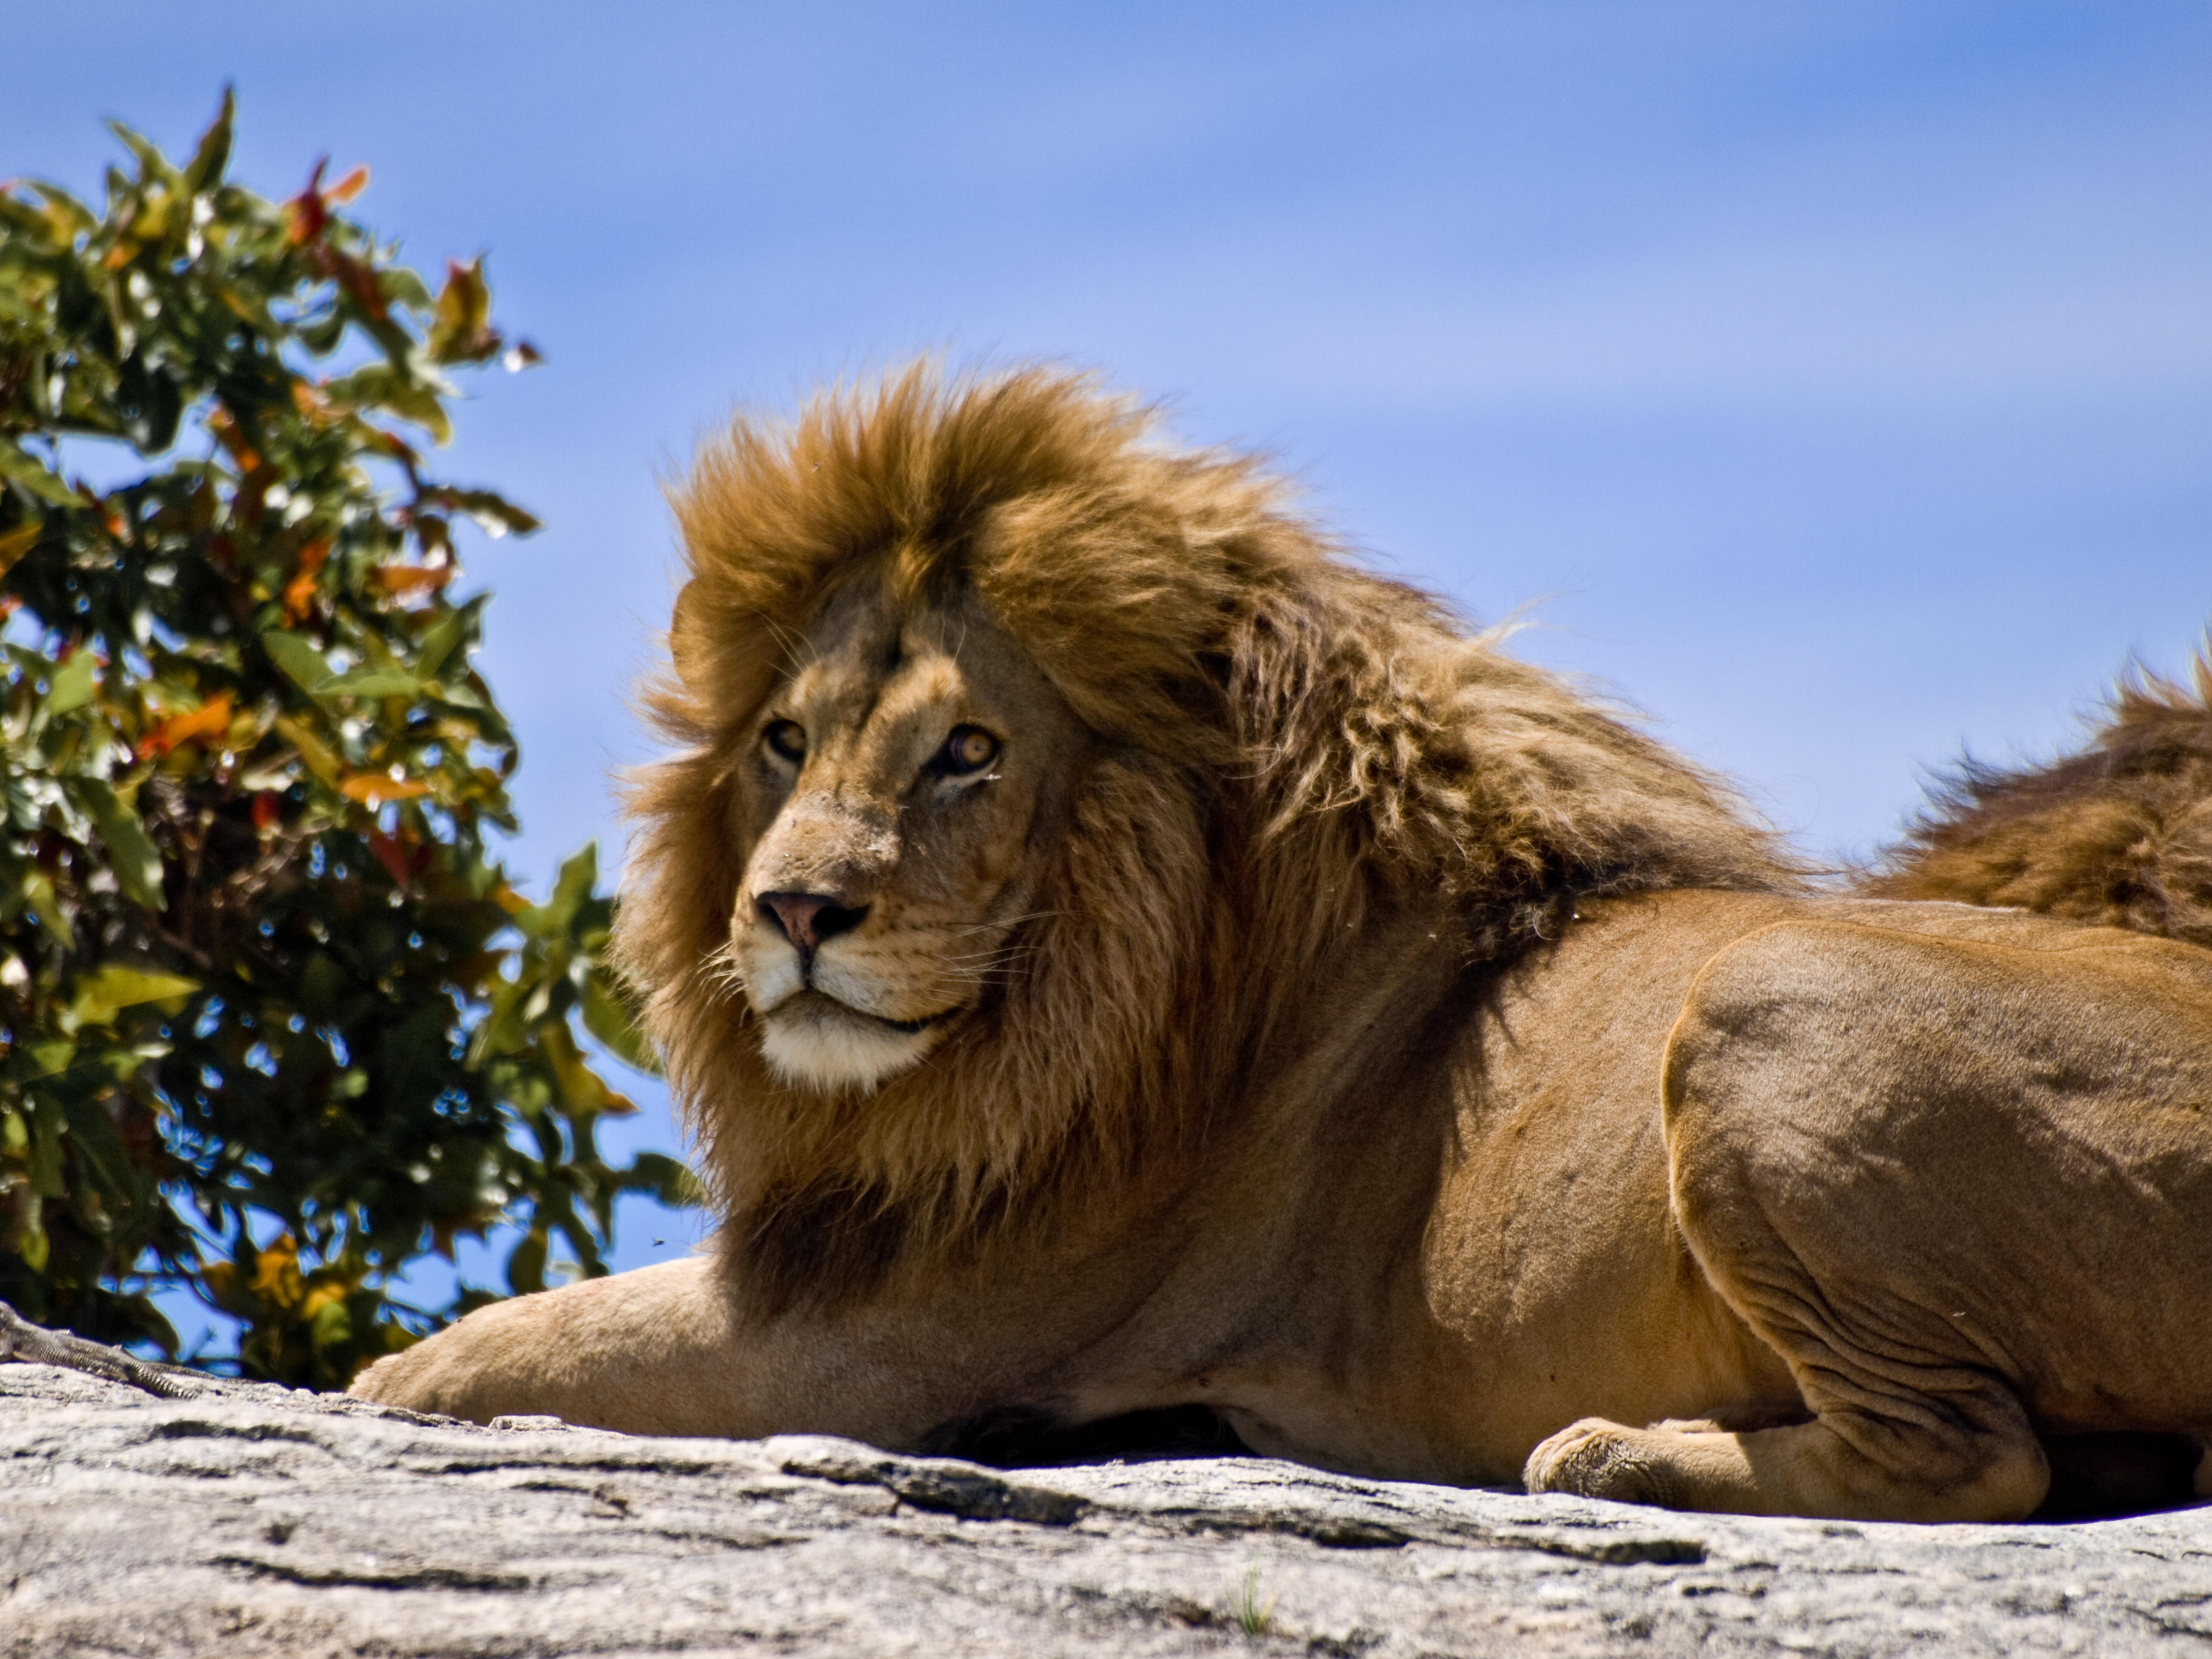 File:Male Lion on Rock.jpg - Wikimedia Commons